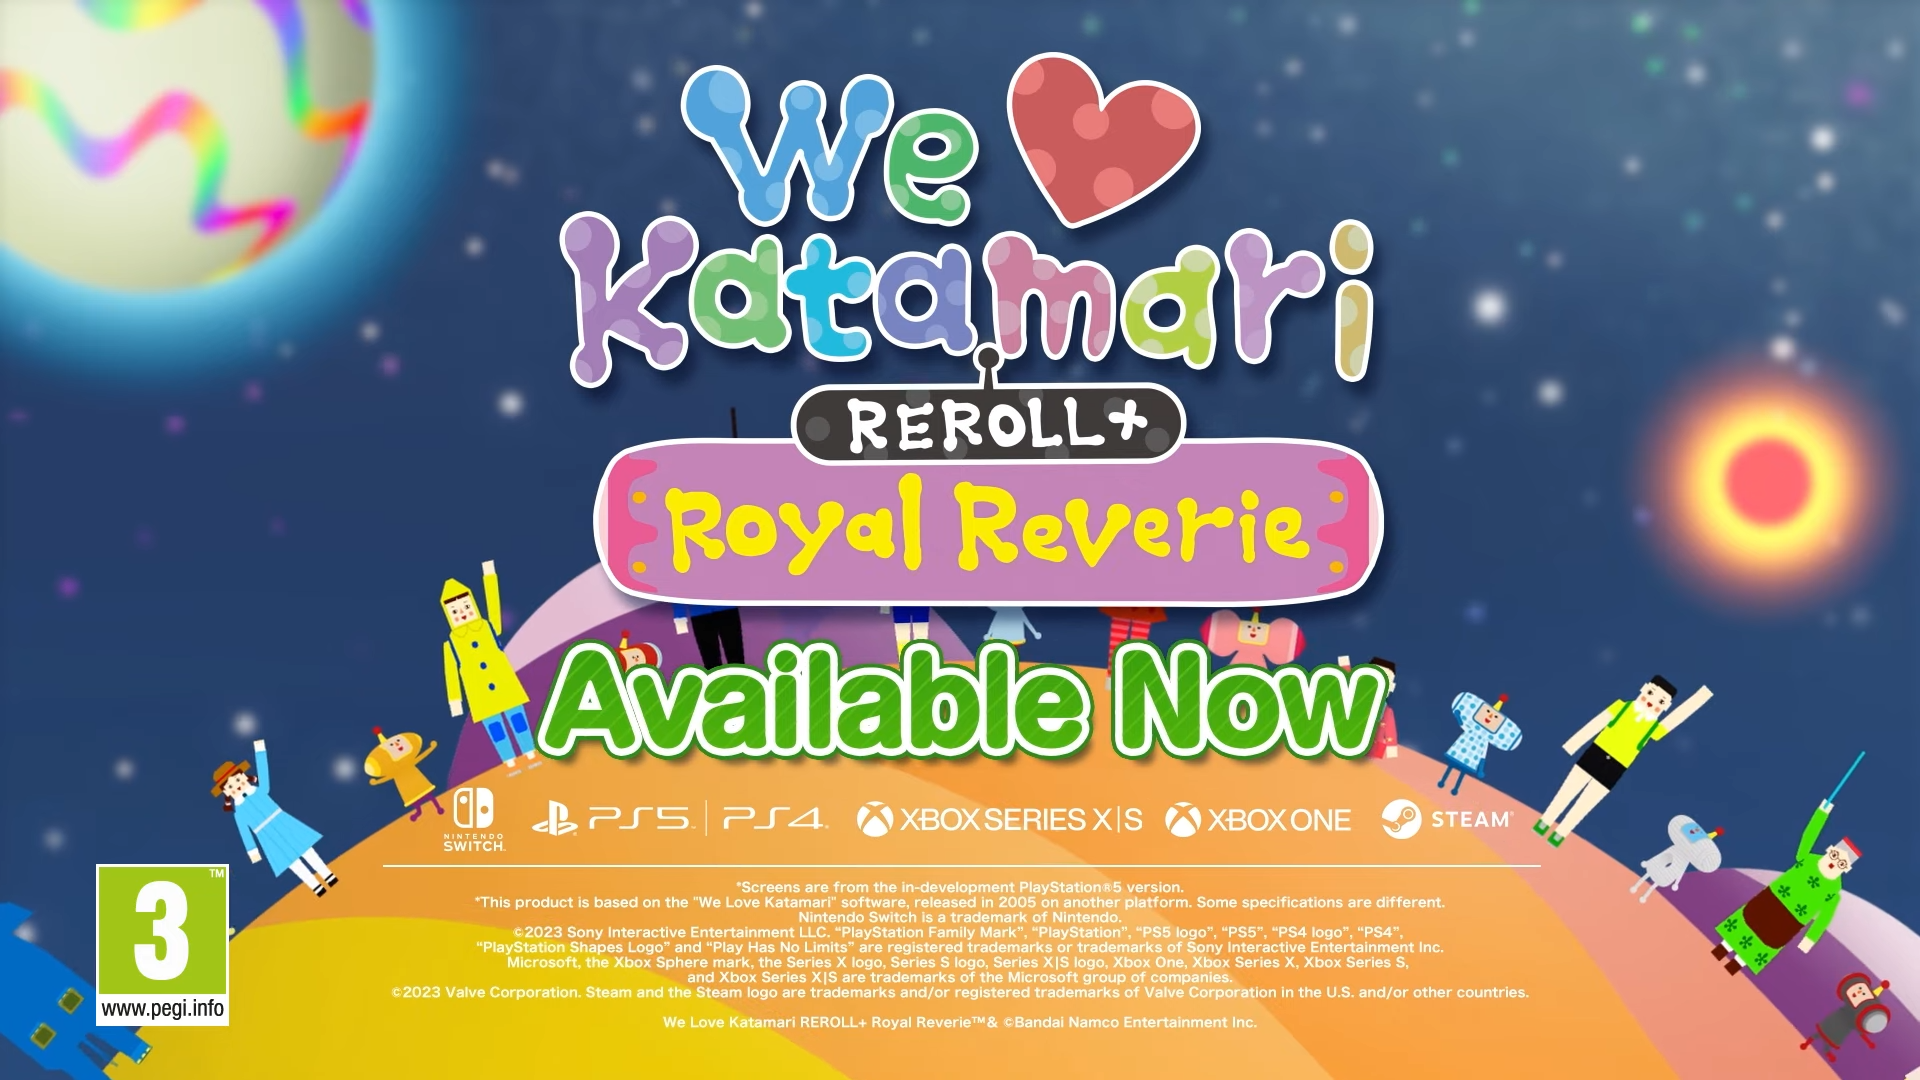 We Love Katamari REROLL+ Royal Reverie Launch Trailer